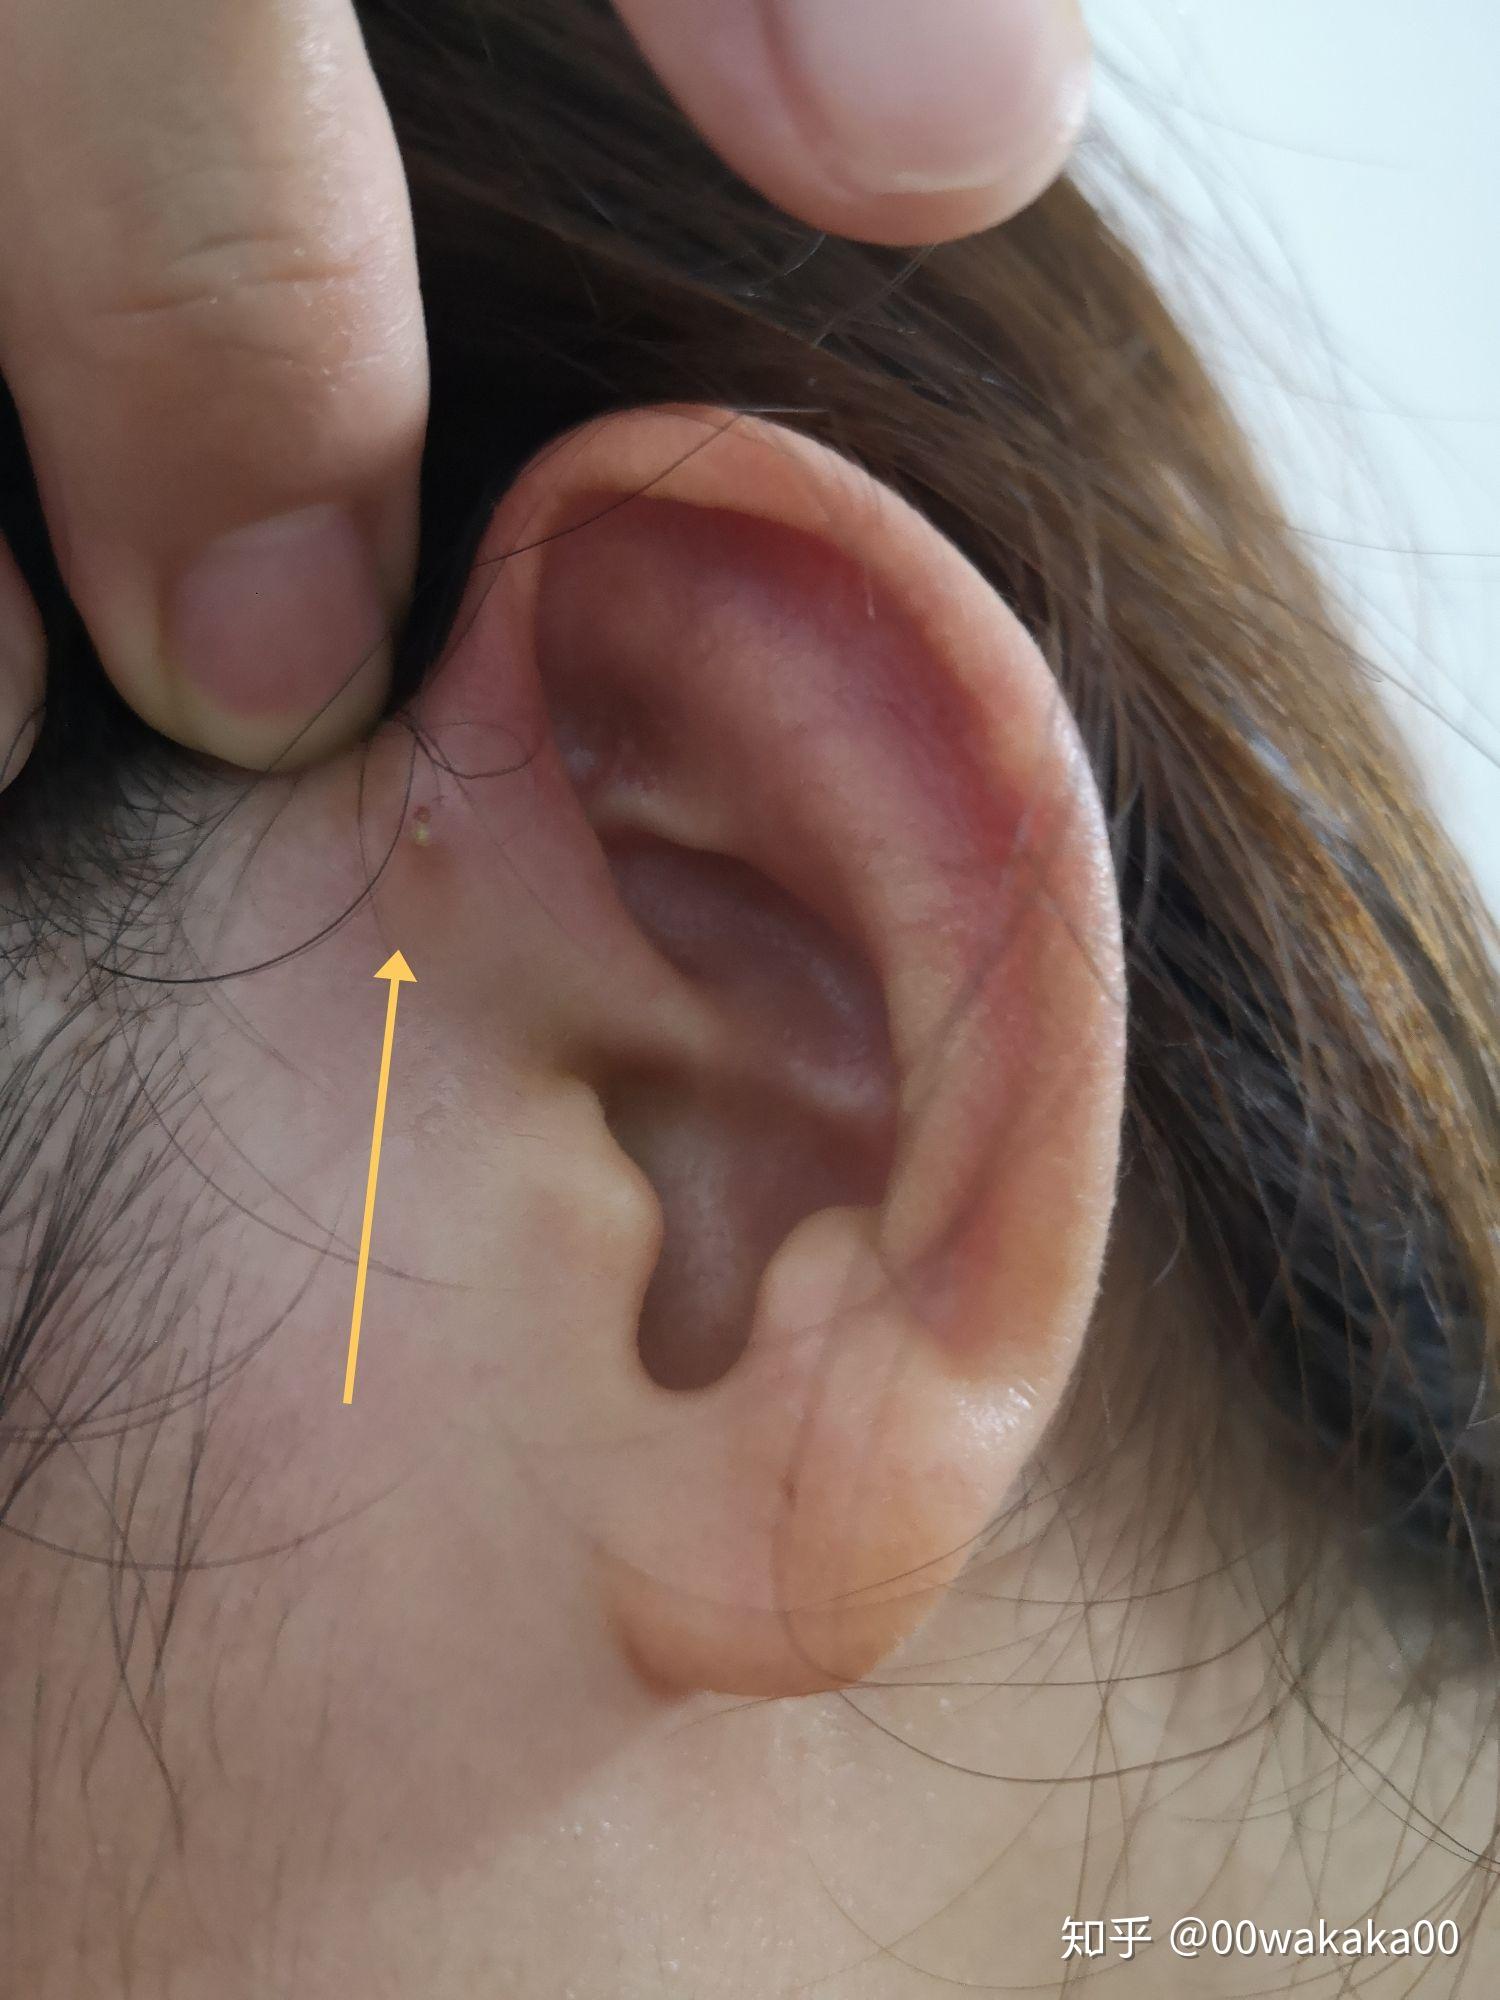 耳前瘘管遗传图谱图片